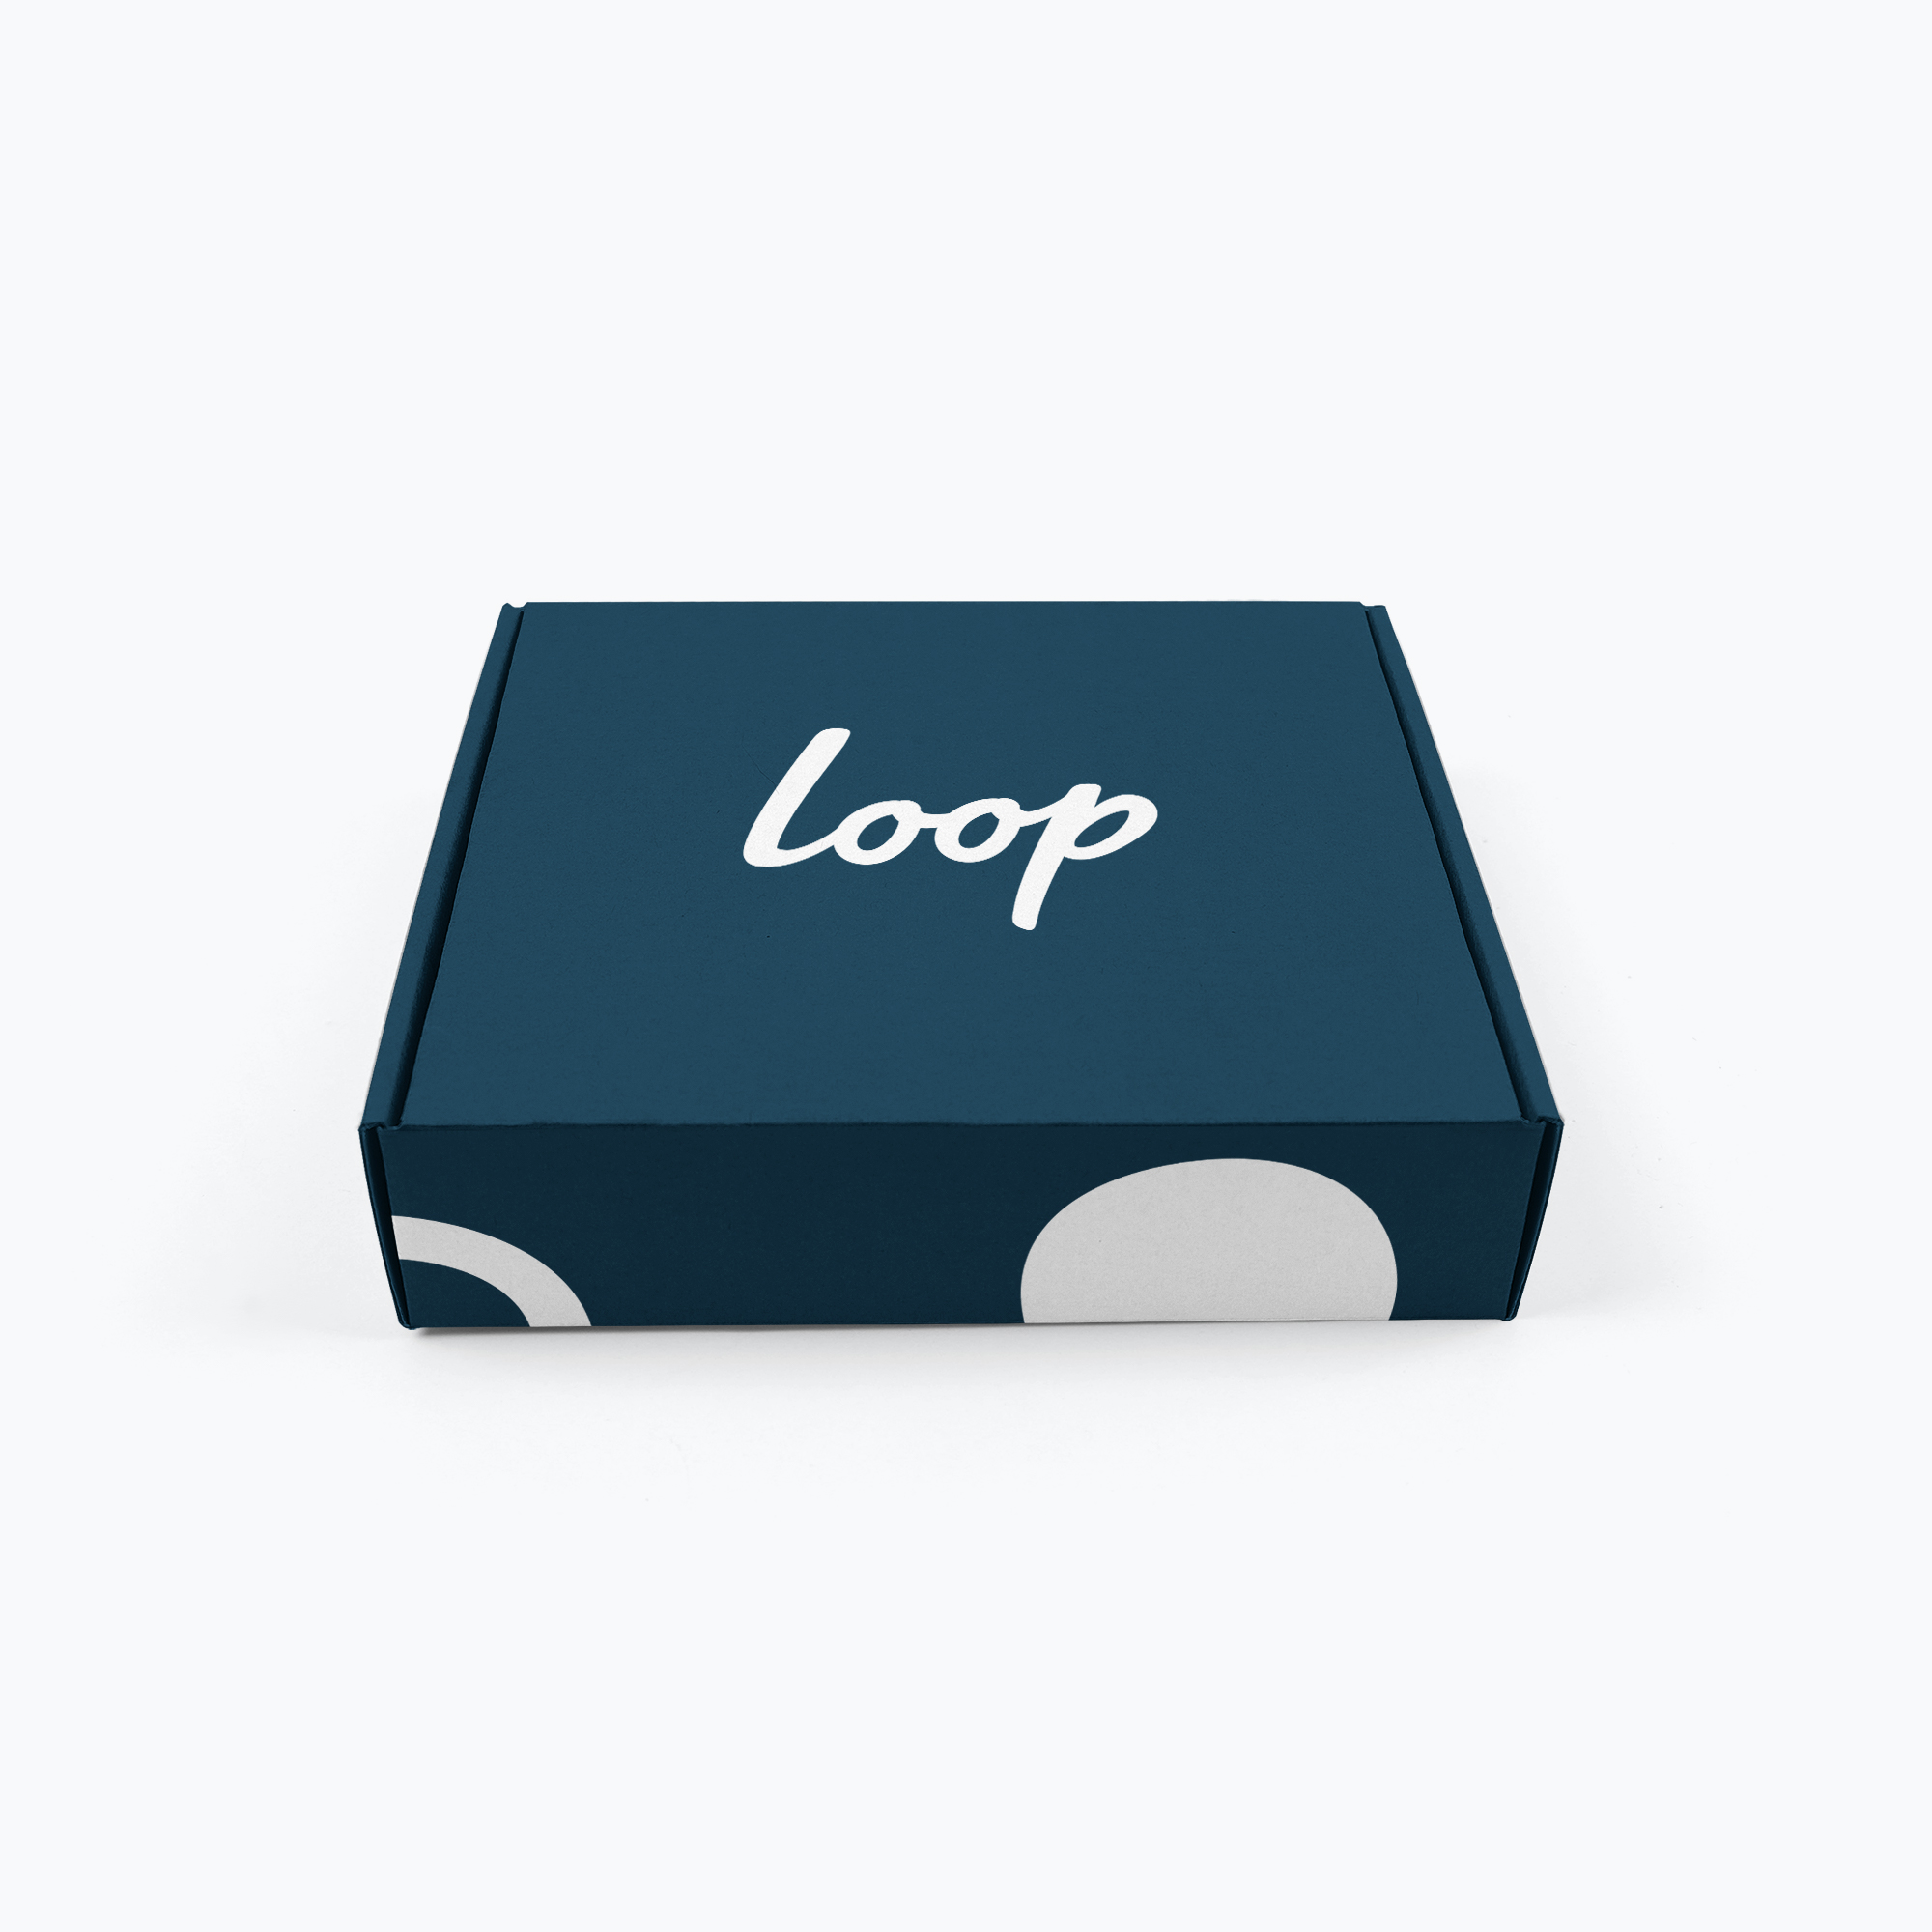 loop-ecomm-mailer-mockup.jpg